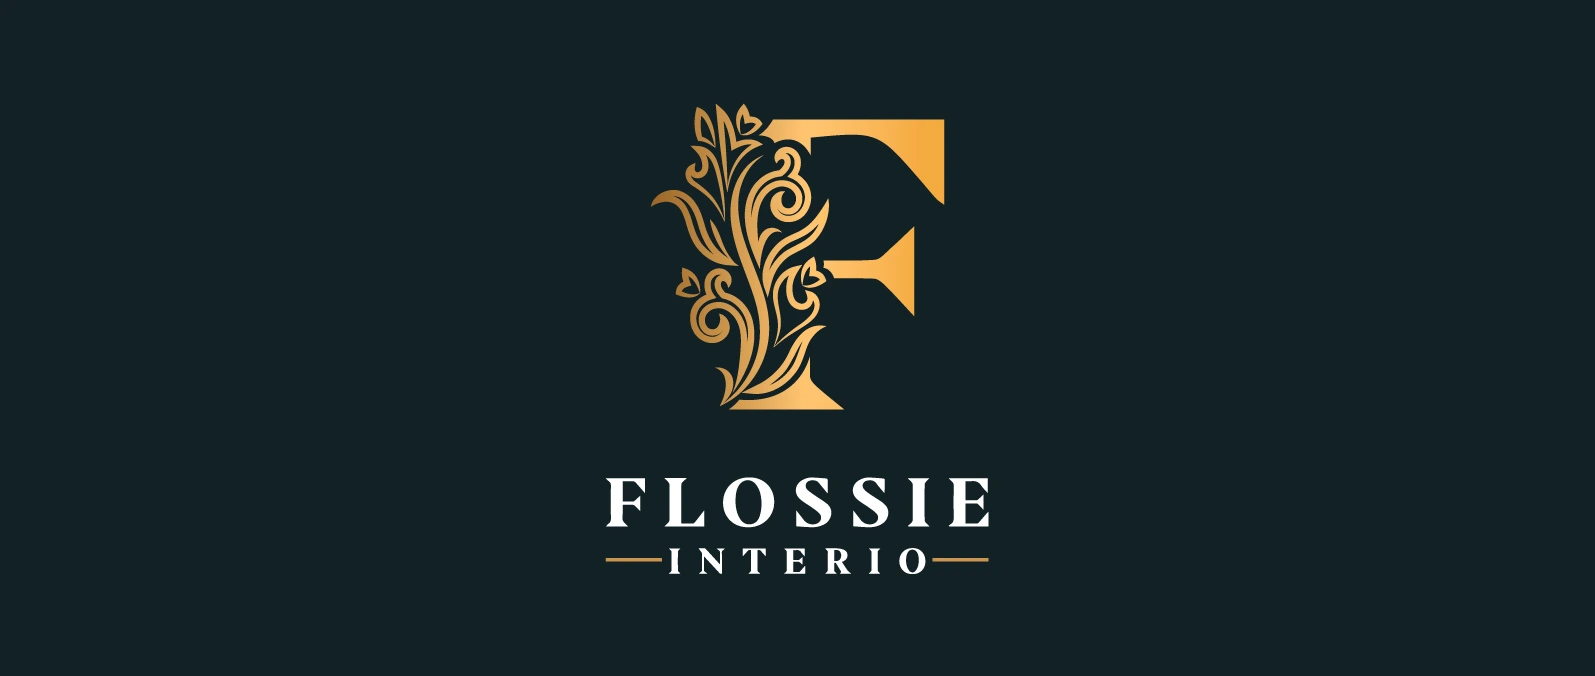 flossie banner